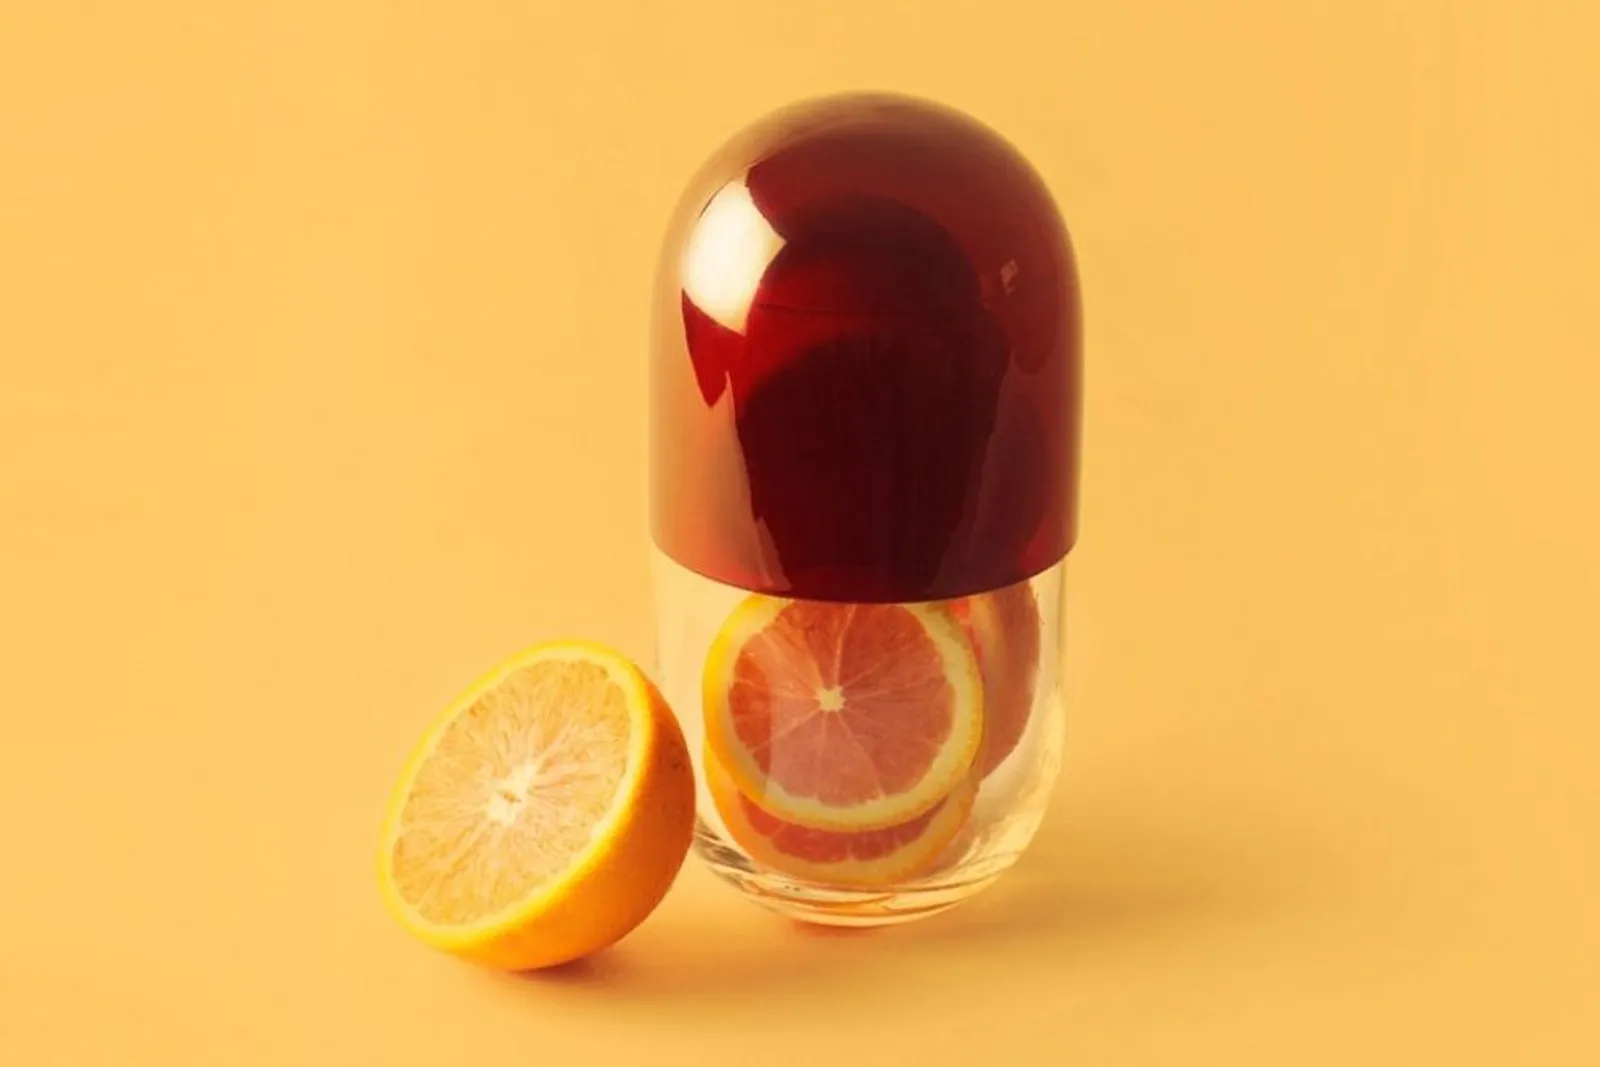 Rekomendasi Obat Vitamin C yang Bagus Untuk Daya Tahan Tubuh